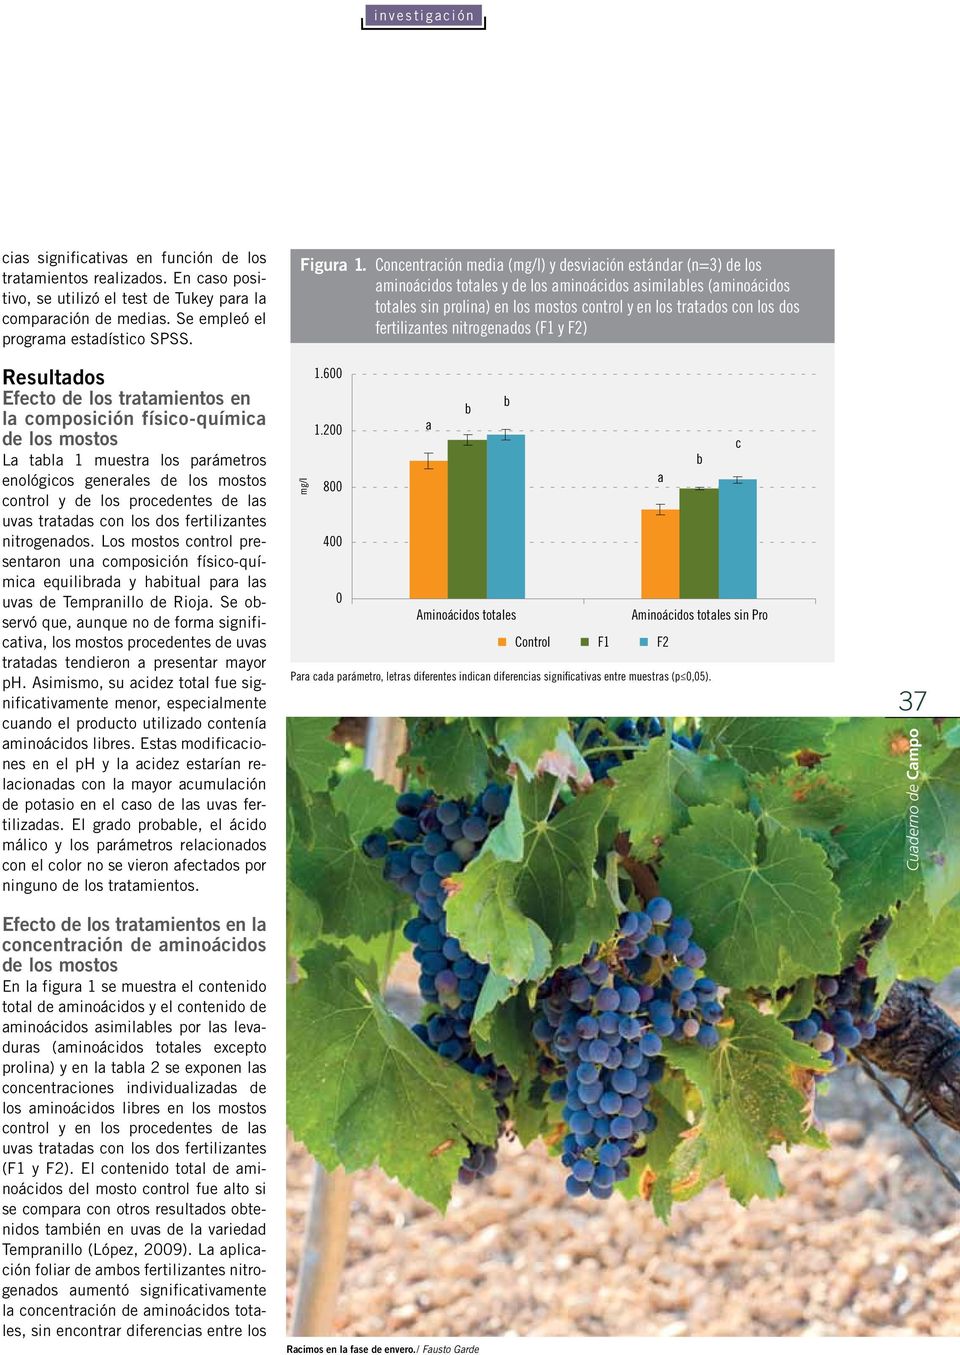 tratadas con los dos fertilizantes nitrogenados. Los mostos control presentaron una composición físico-química equilibrada y habitual para las uvas de Tempranillo de Rioja.